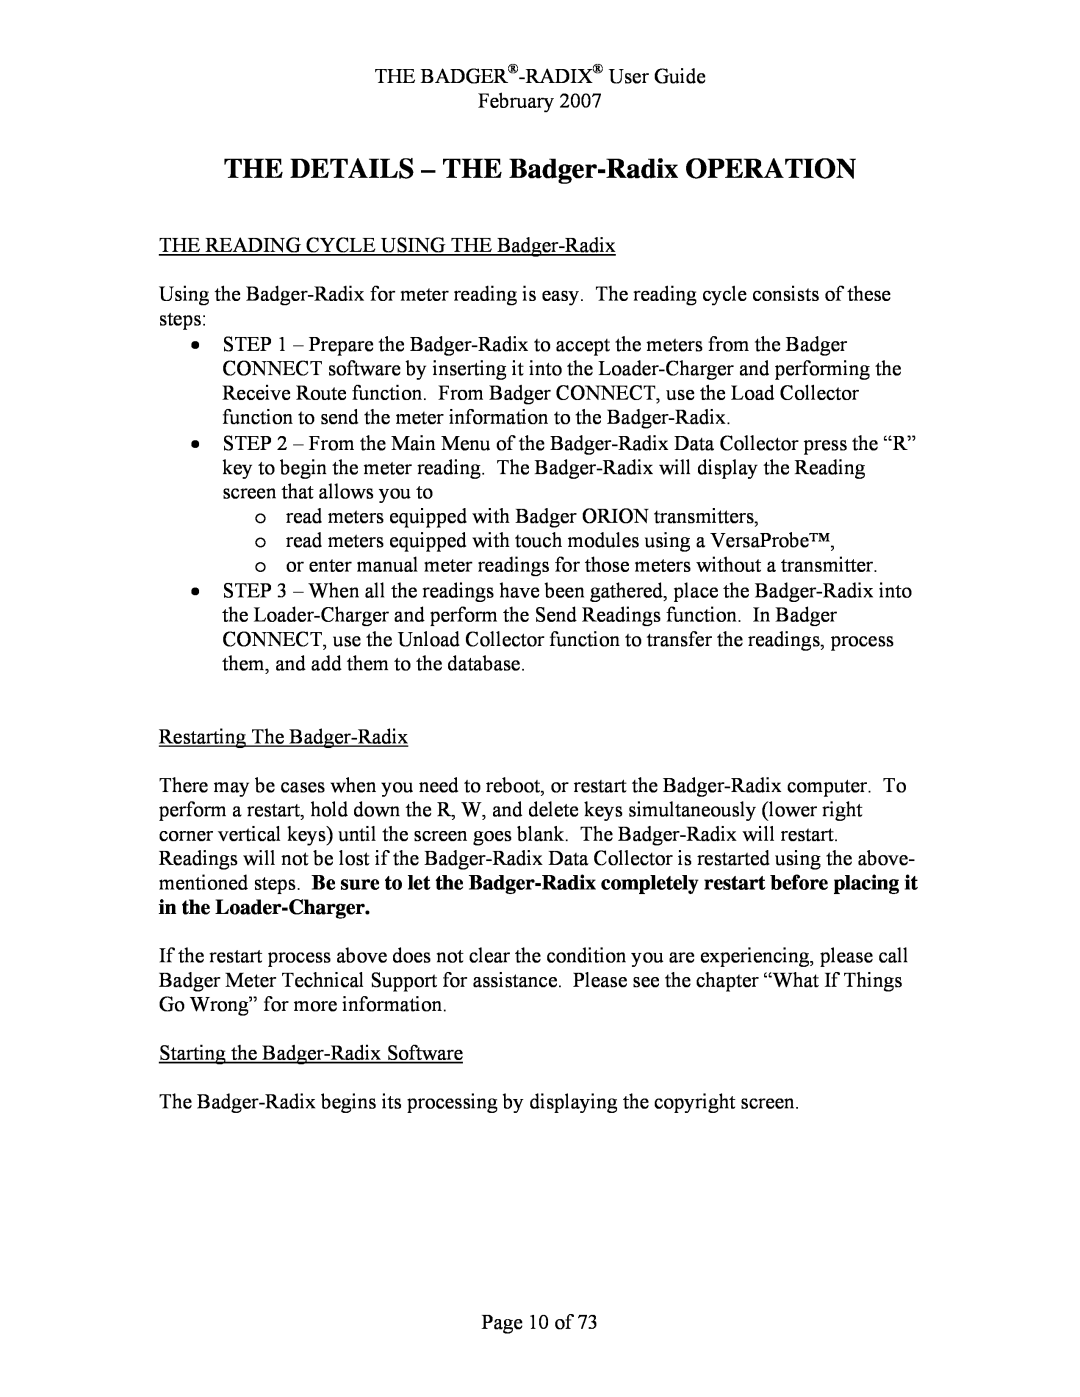 Badger Basket RAD-IOM-01, N64944-001 operation manual THE DETAILS - THE Badger-Radix OPERATION 